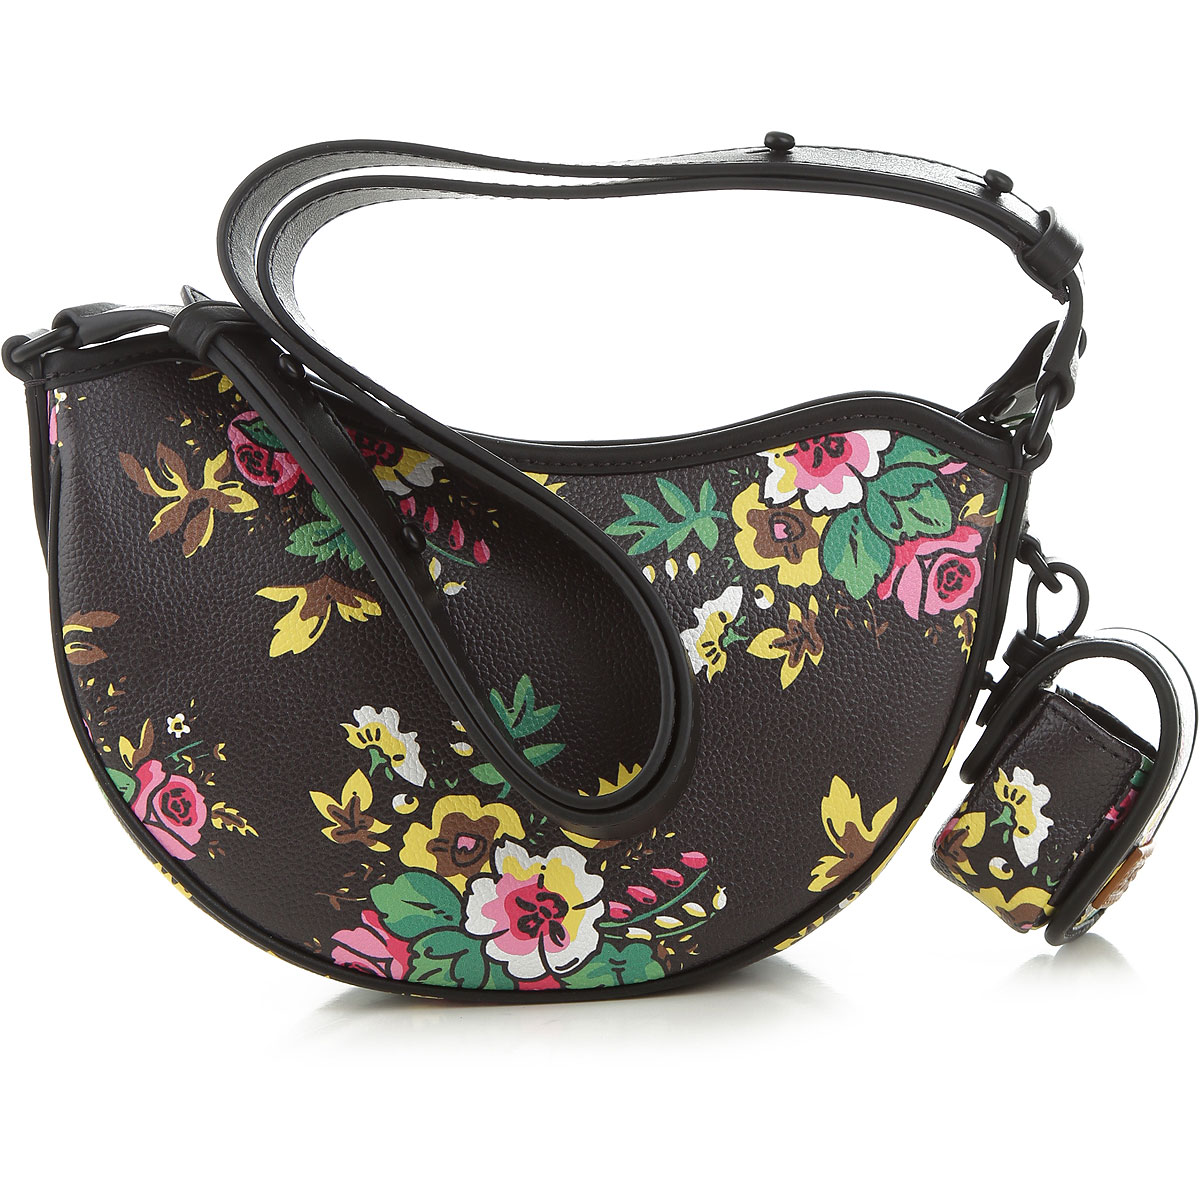 Handbags Kenzo, Style code: 2sa705-b04-99